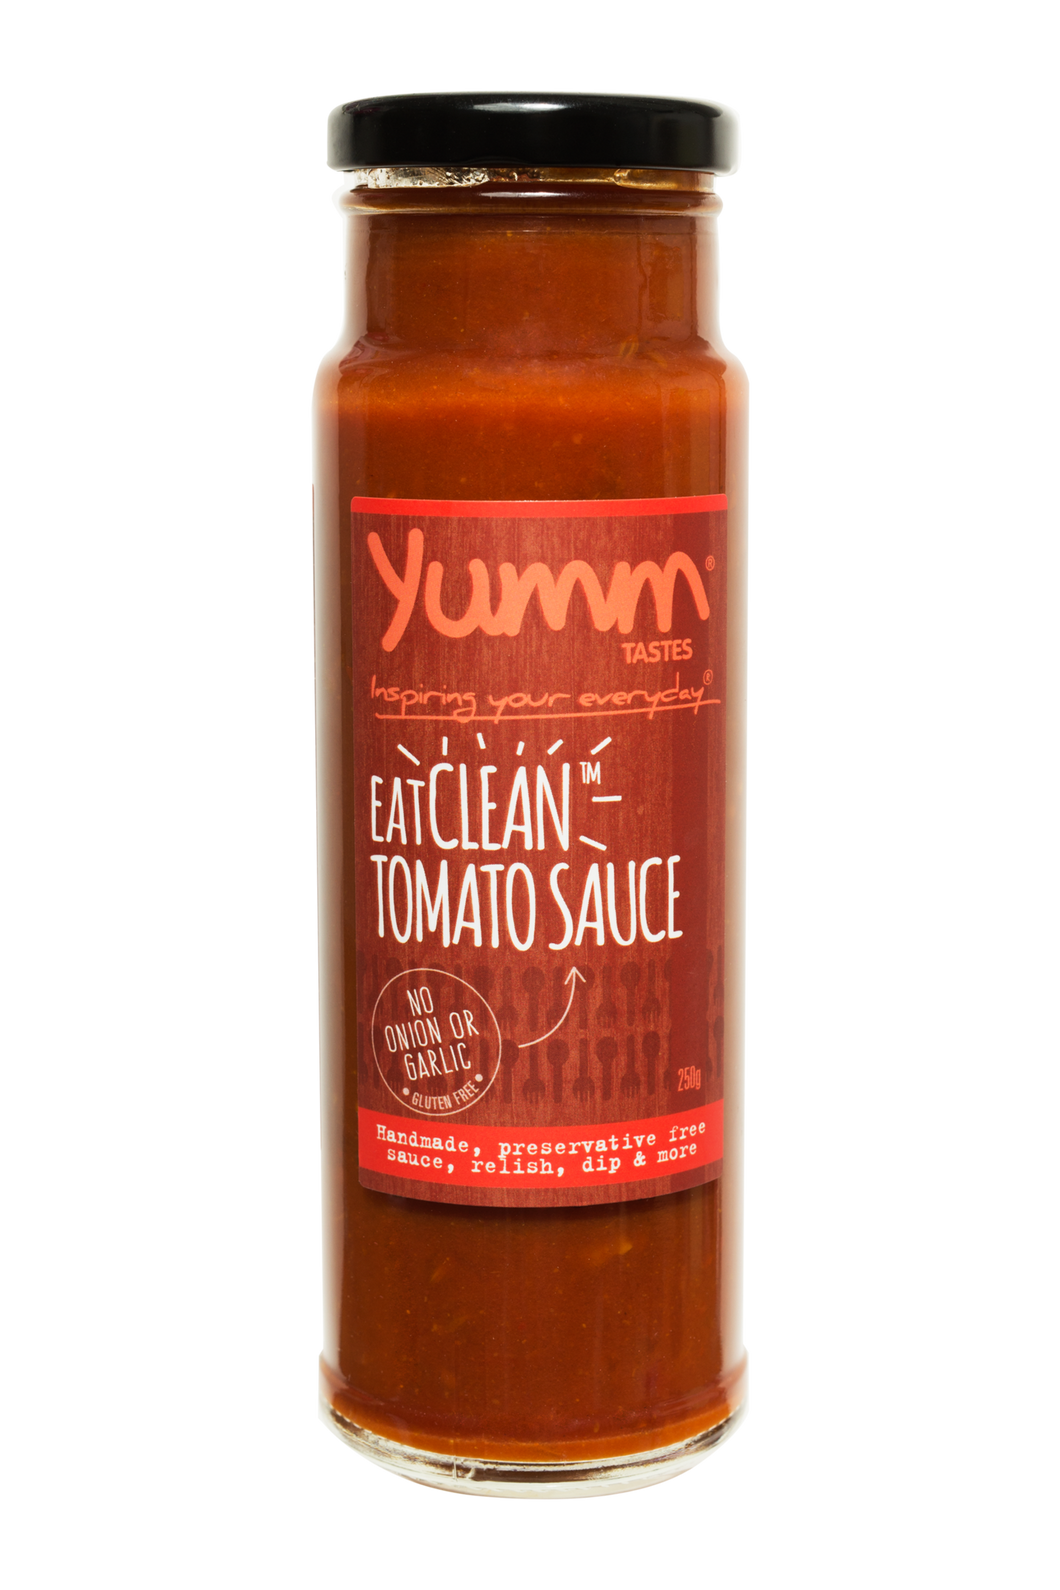 EatClean Tomato Sauce - yumm tastes